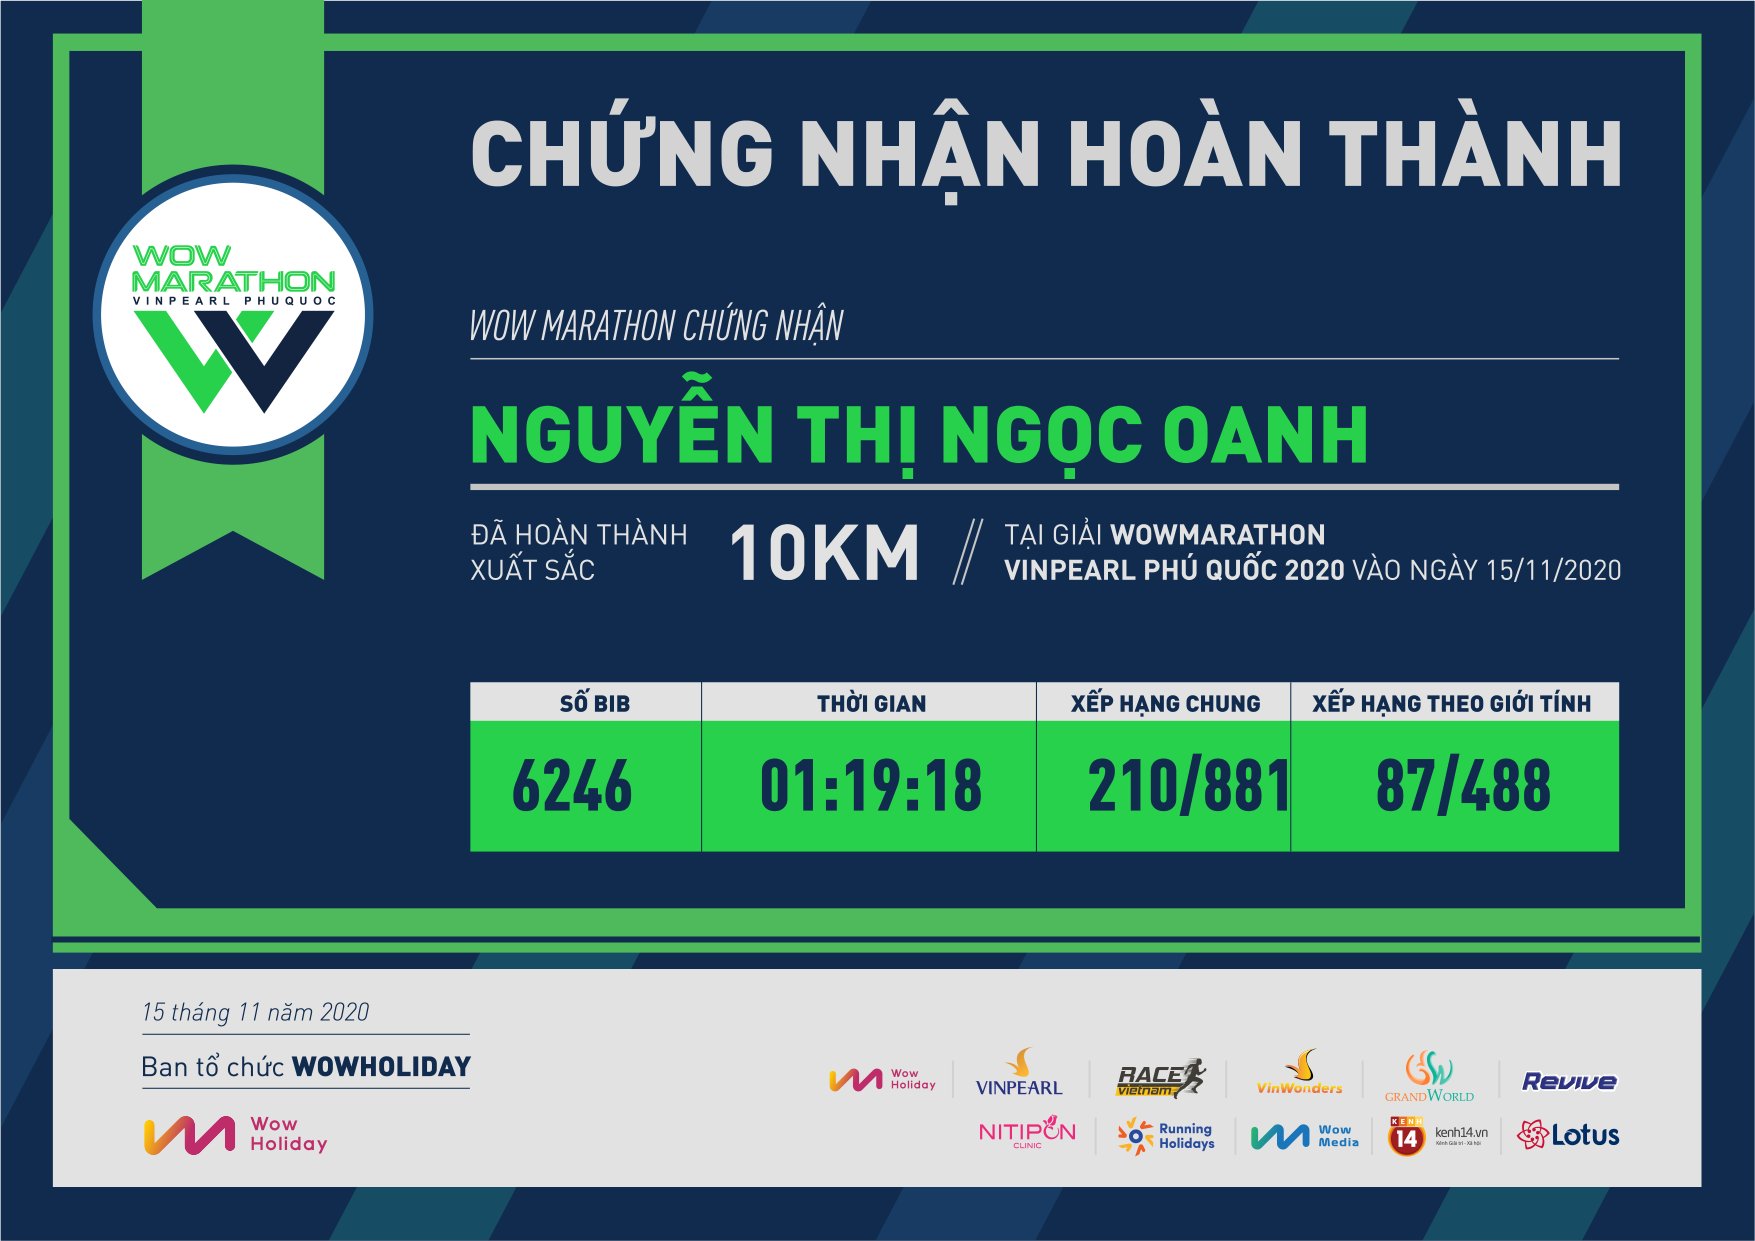 6246 - Nguyễn Thị Ngọc Oanh